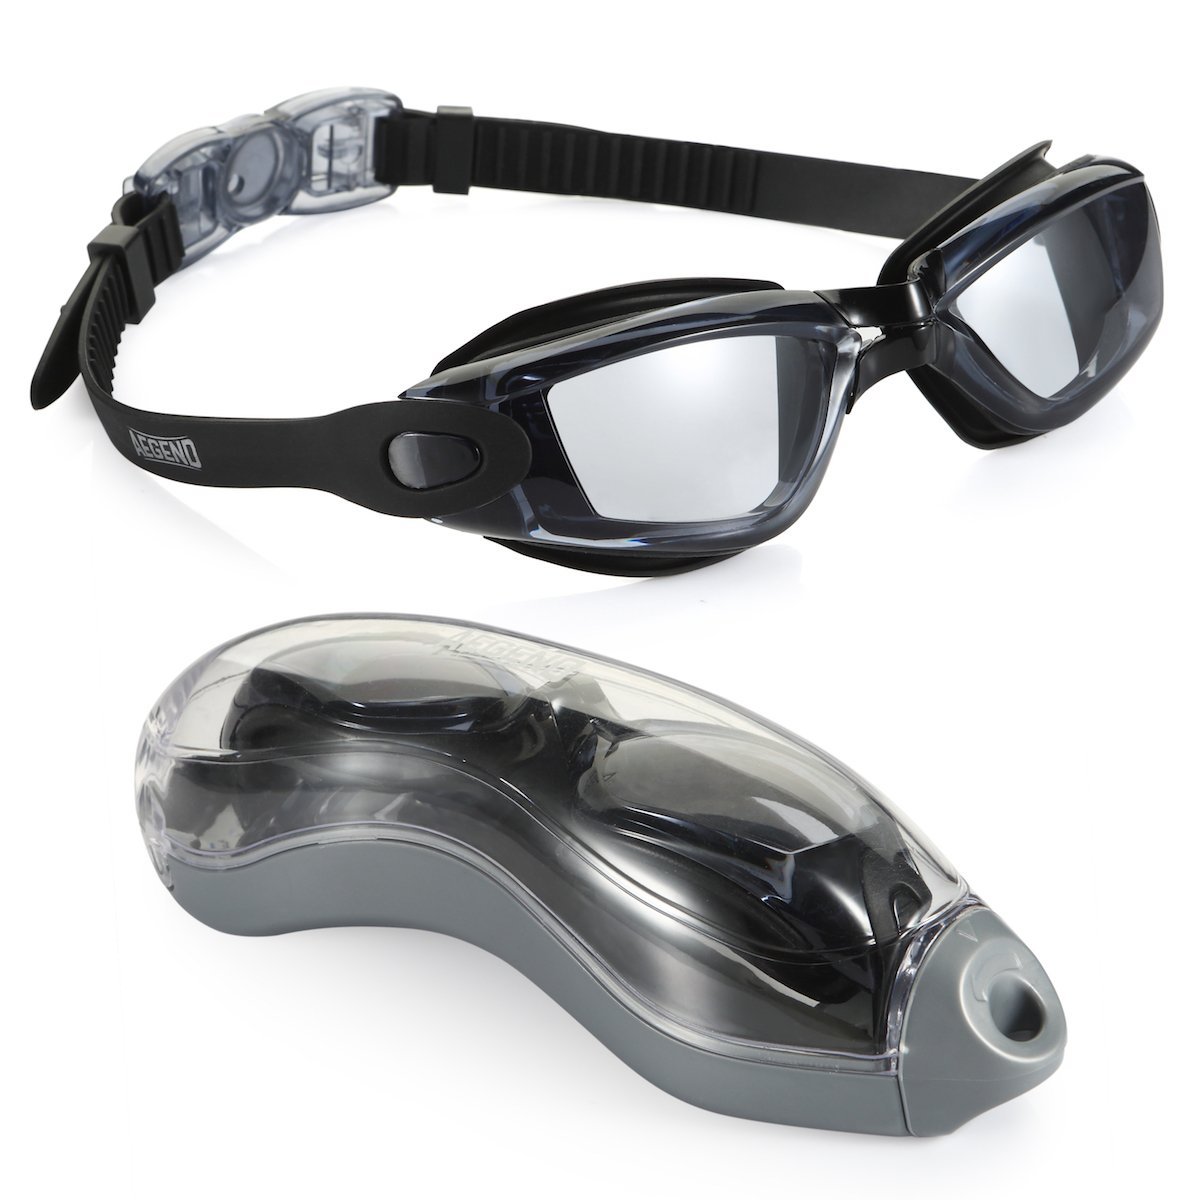 Slazenger Goggle senior biofuse ✔ protección ultravioleta ✔ tintadas ✔ ajustable Nuevo Top 